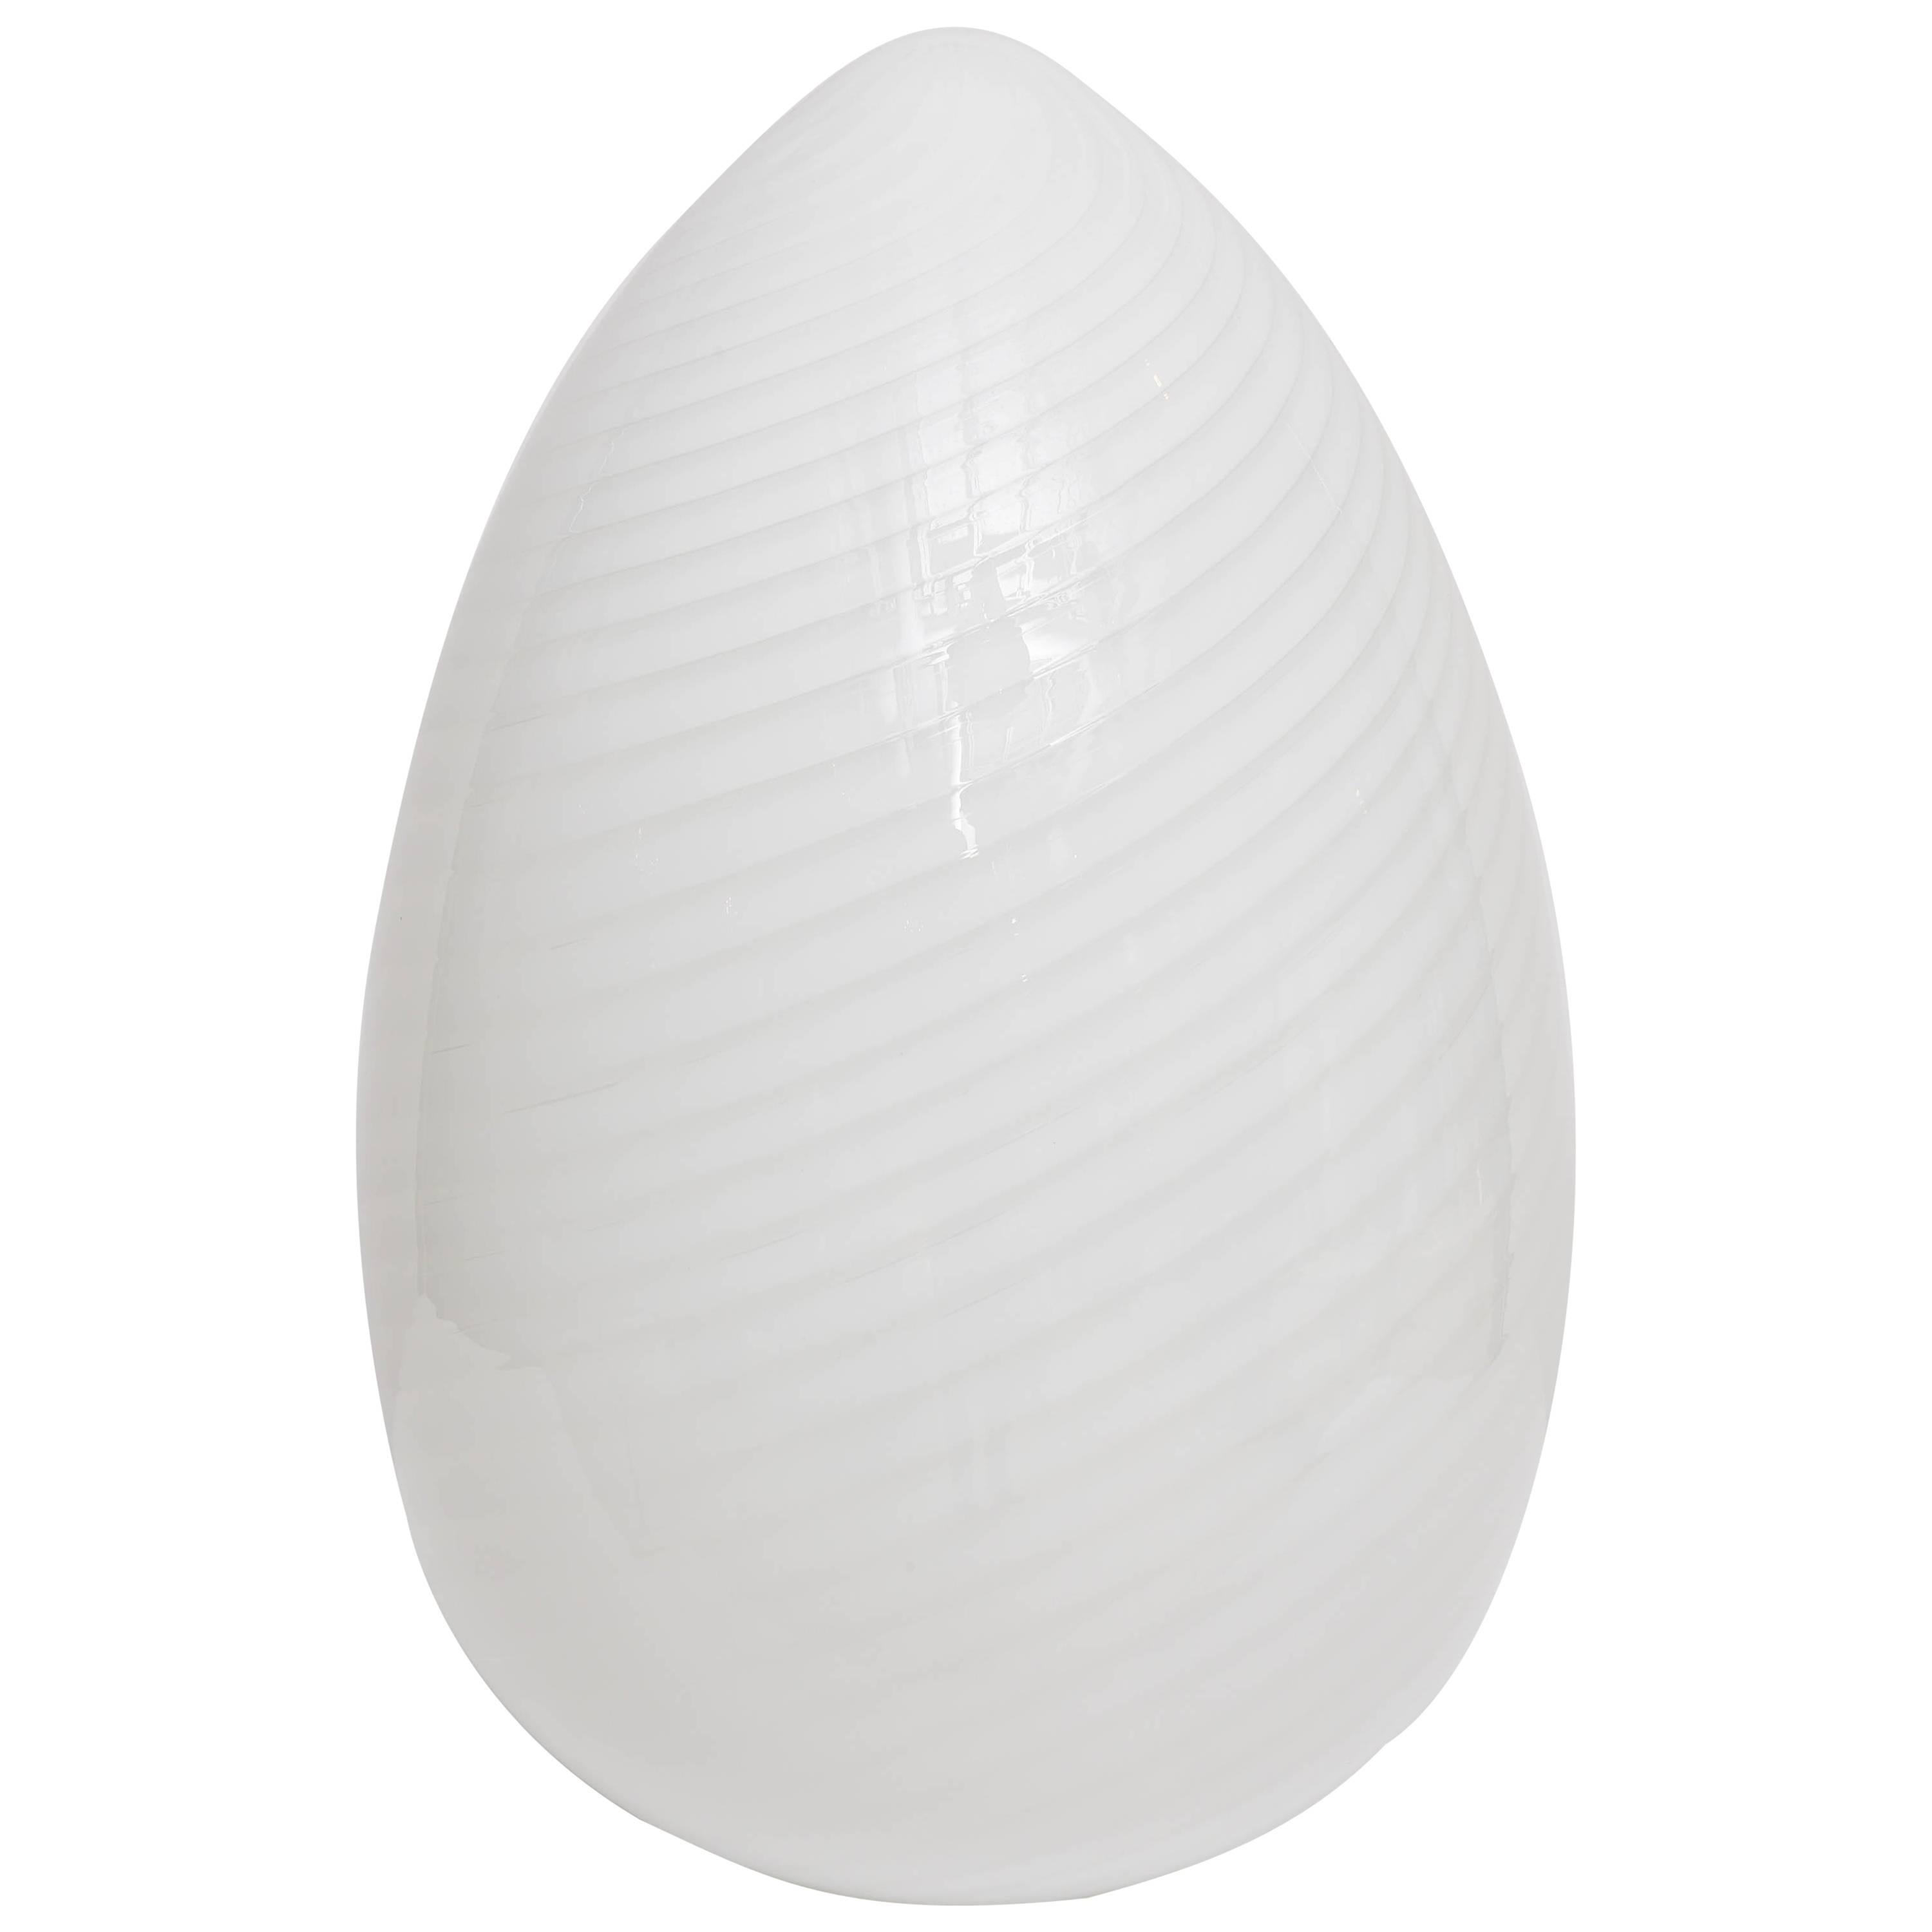 Giant Vetri Murano Egg Lamp